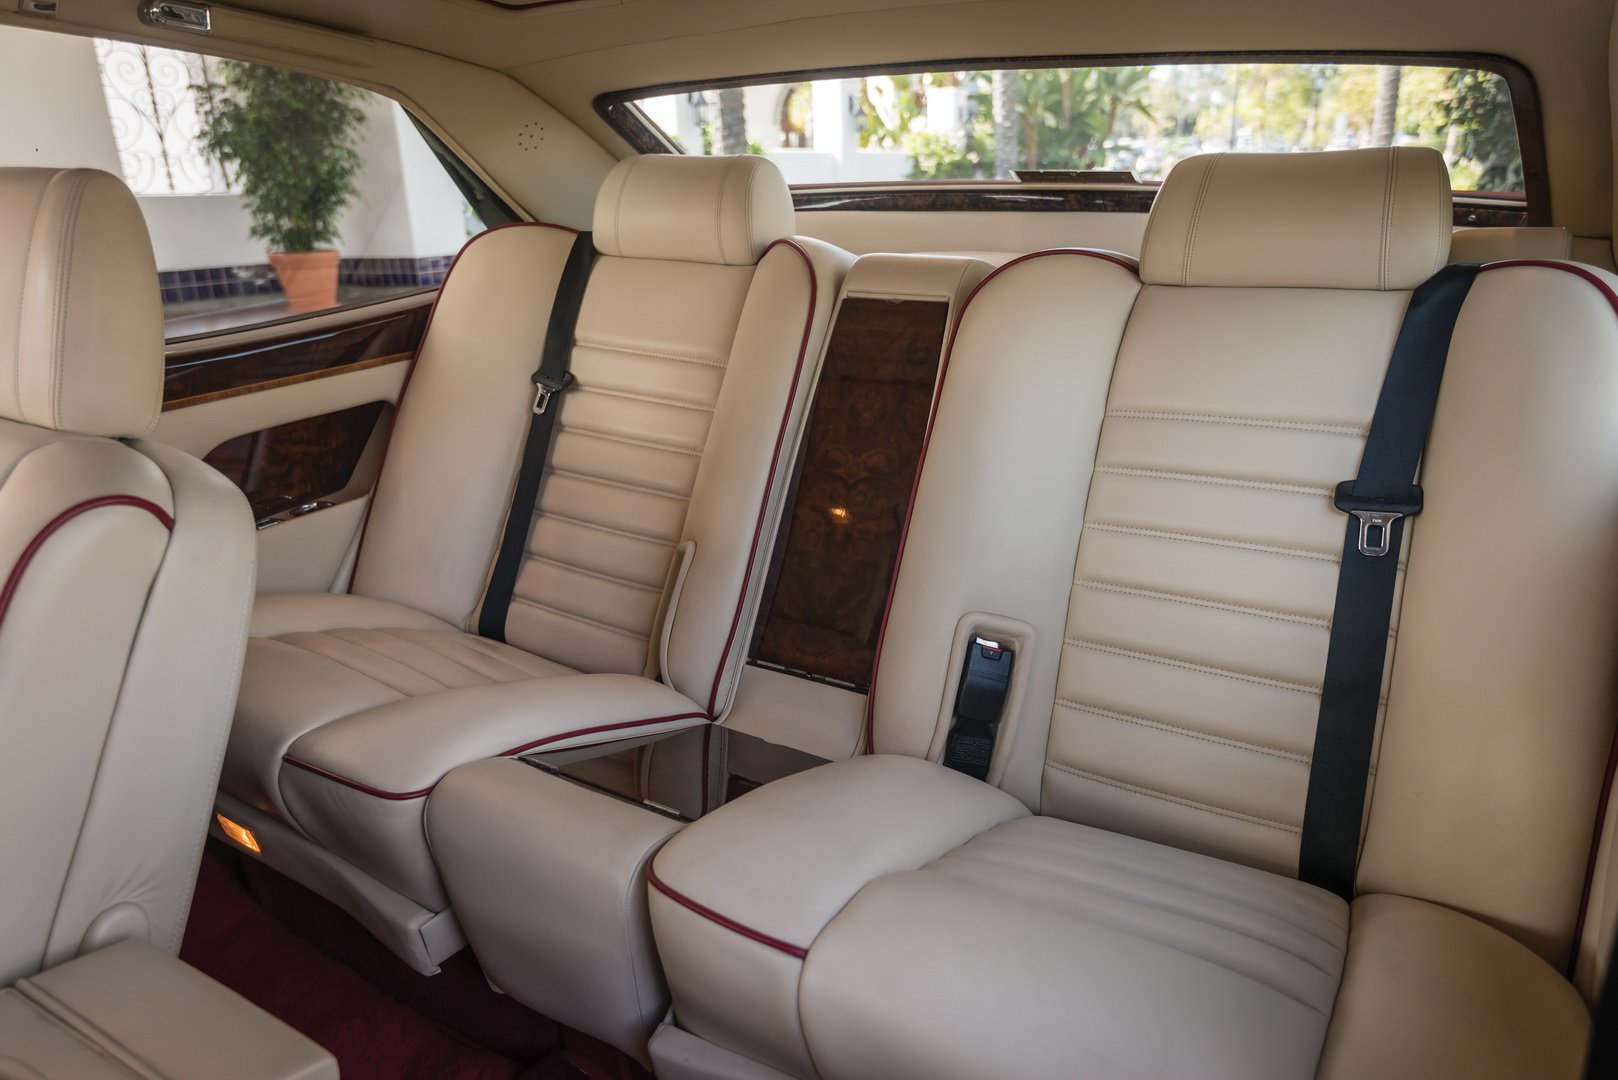 Bentley Empress II Coupe z produkce londýnské karosárny Hooper je skutečná vzácnost